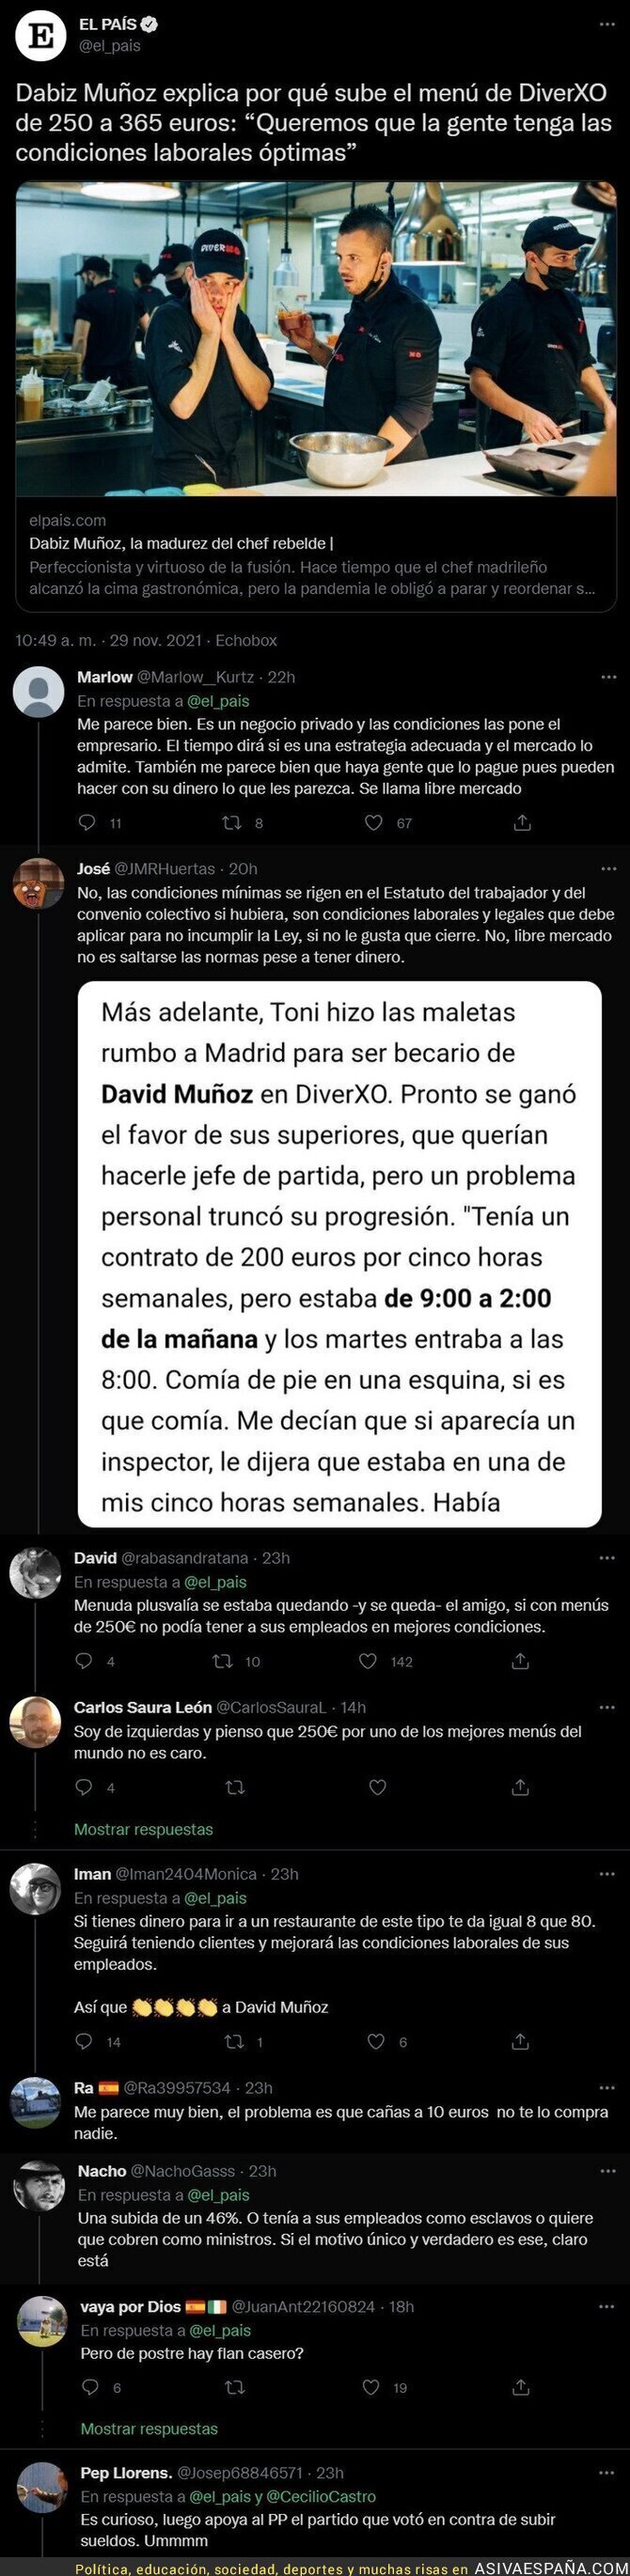 Escándalo por el precio al que ha subido Dabiz Muñoz su menú en el restaurante para pagarle a sus camareros